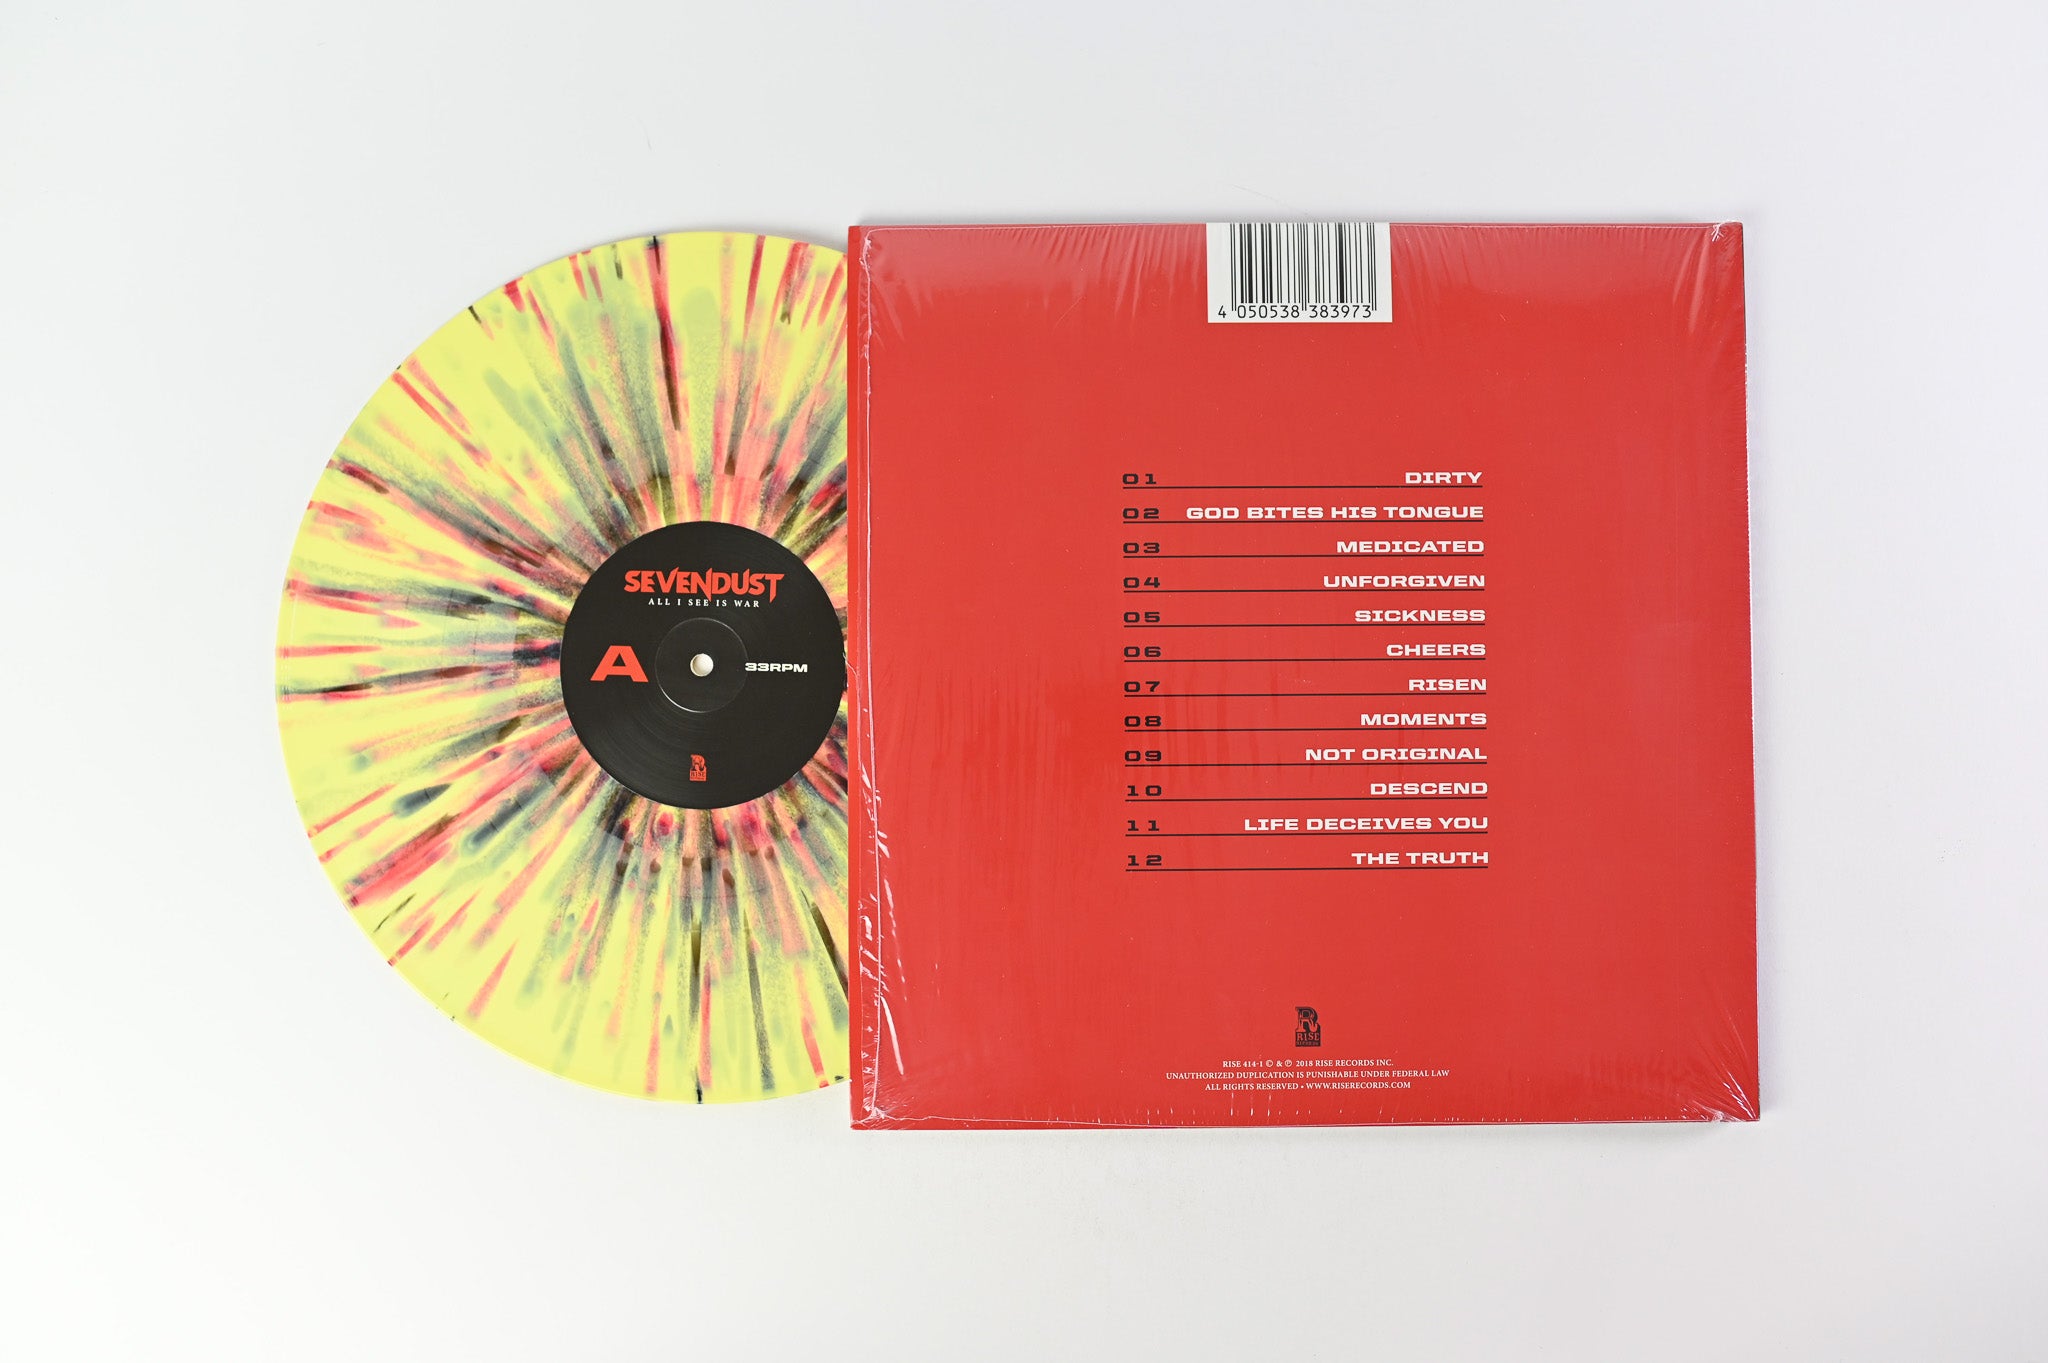 Sevendust - All I See Is War on Rise Ltd Yellow w/Red & Black Splatter